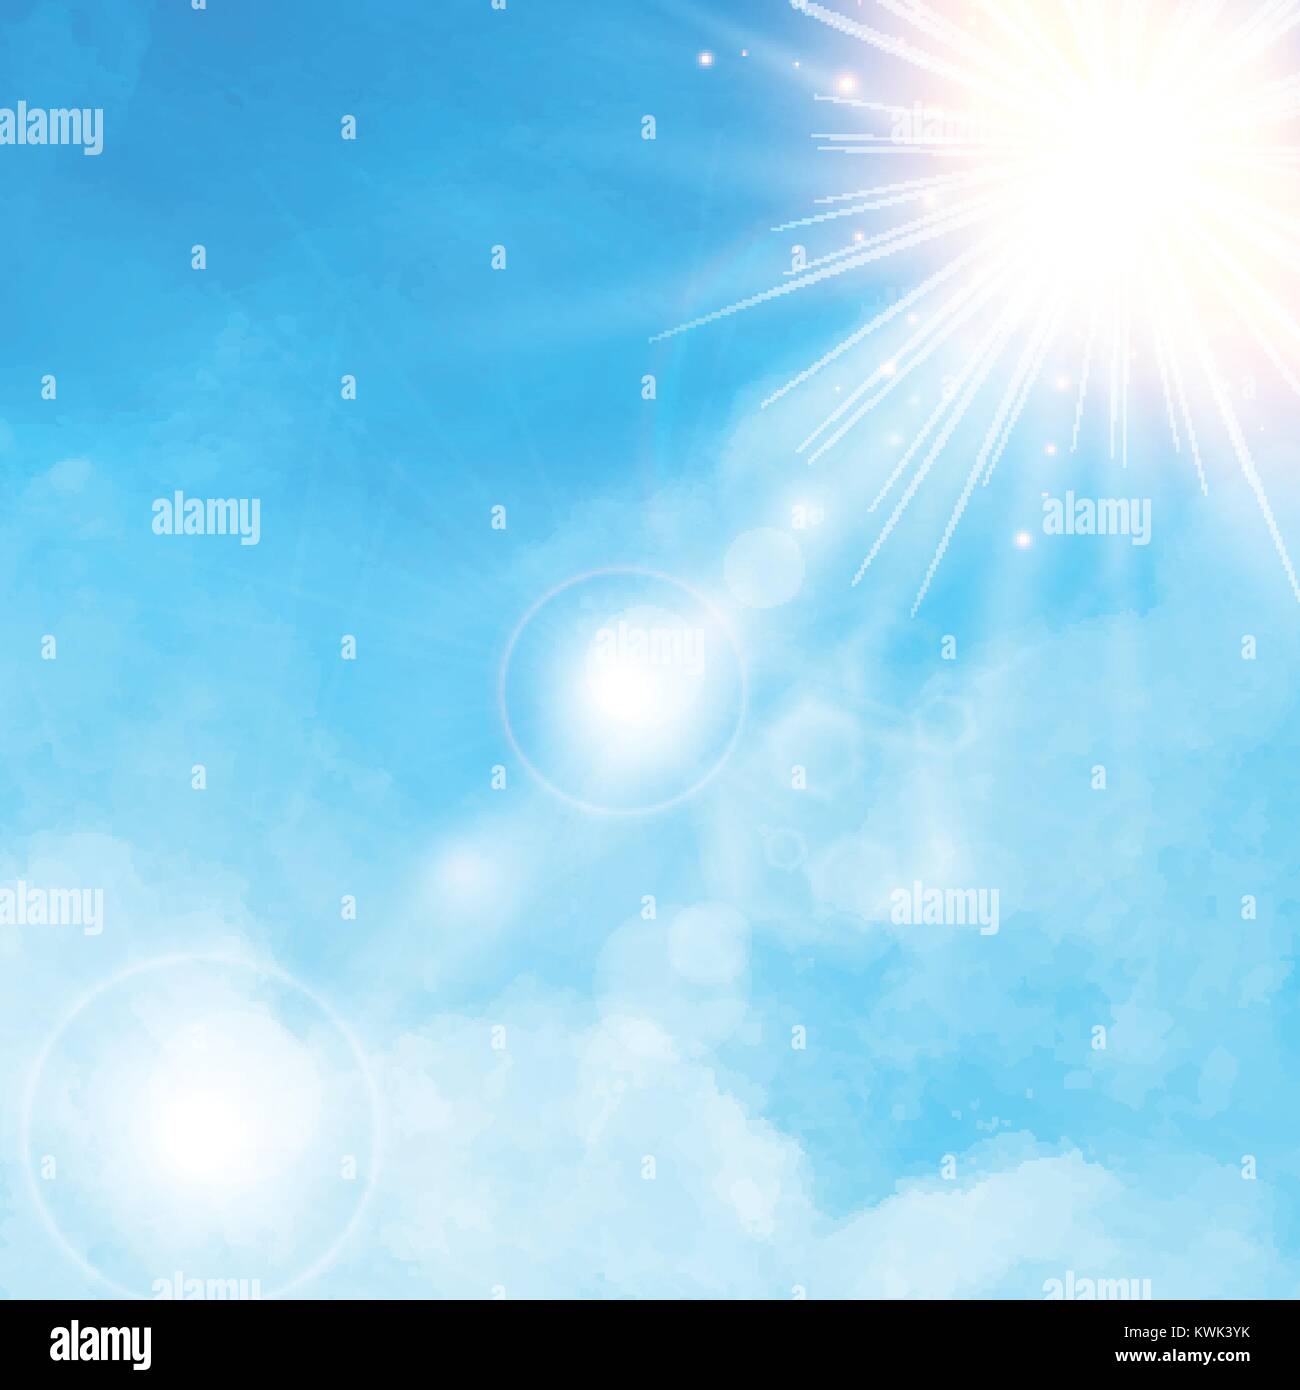 Detalle de nubes blancas en el cielo azul con sol daylight ilustración vectorial fondo con espacio de copia Ilustración del Vector